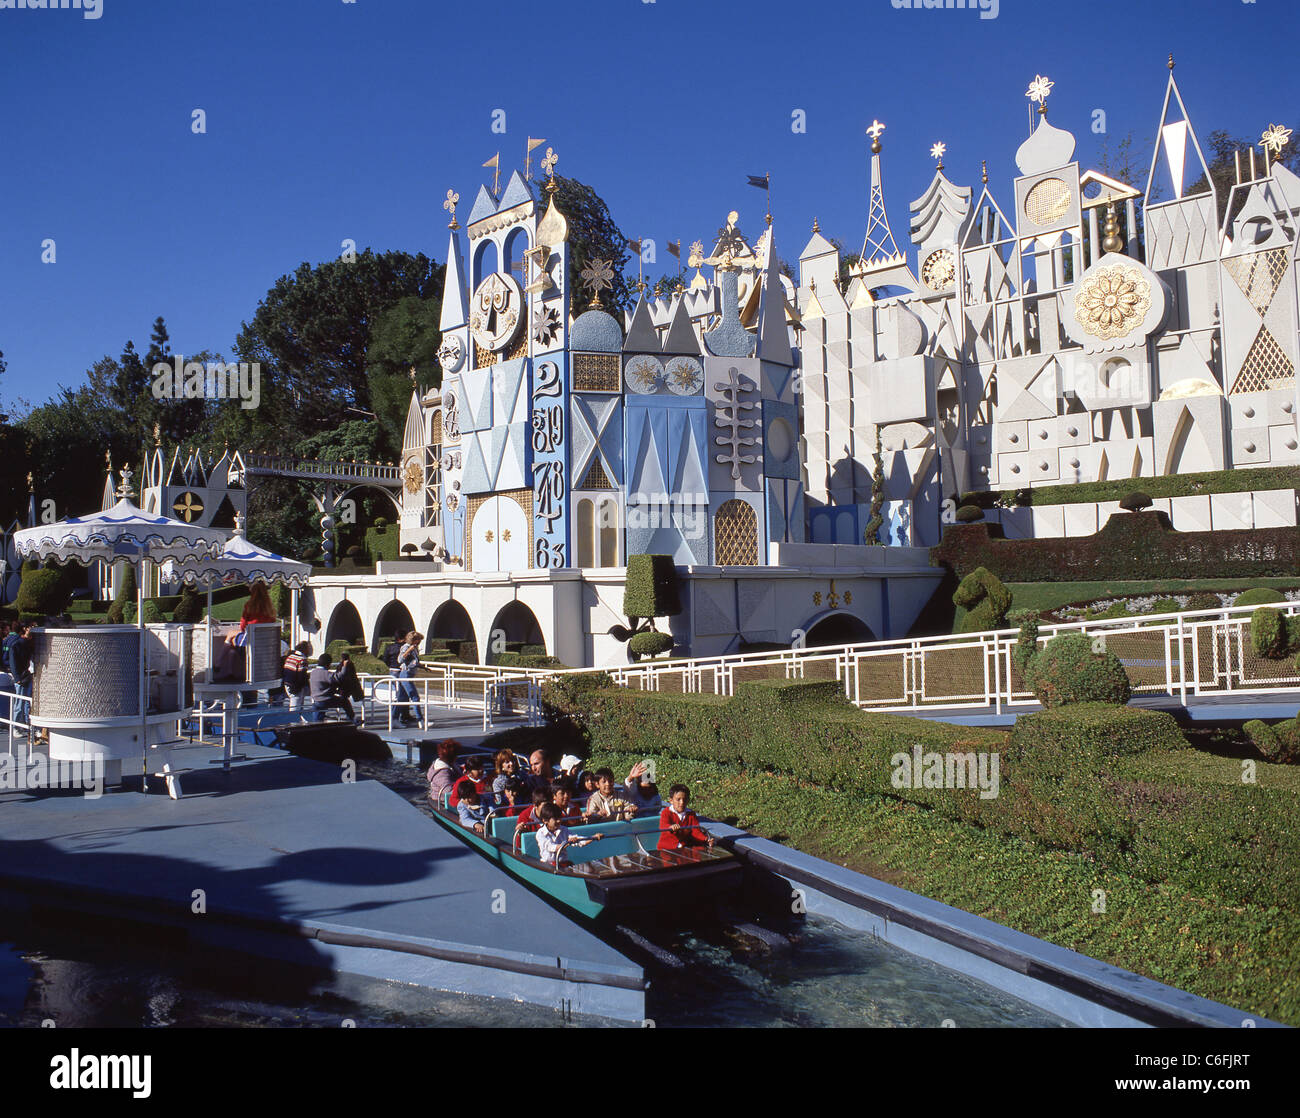 "C'est un petit monde' l'attraction, Disneyland, Anaheim, Californie, États-Unis d'Amérique Banque D'Images